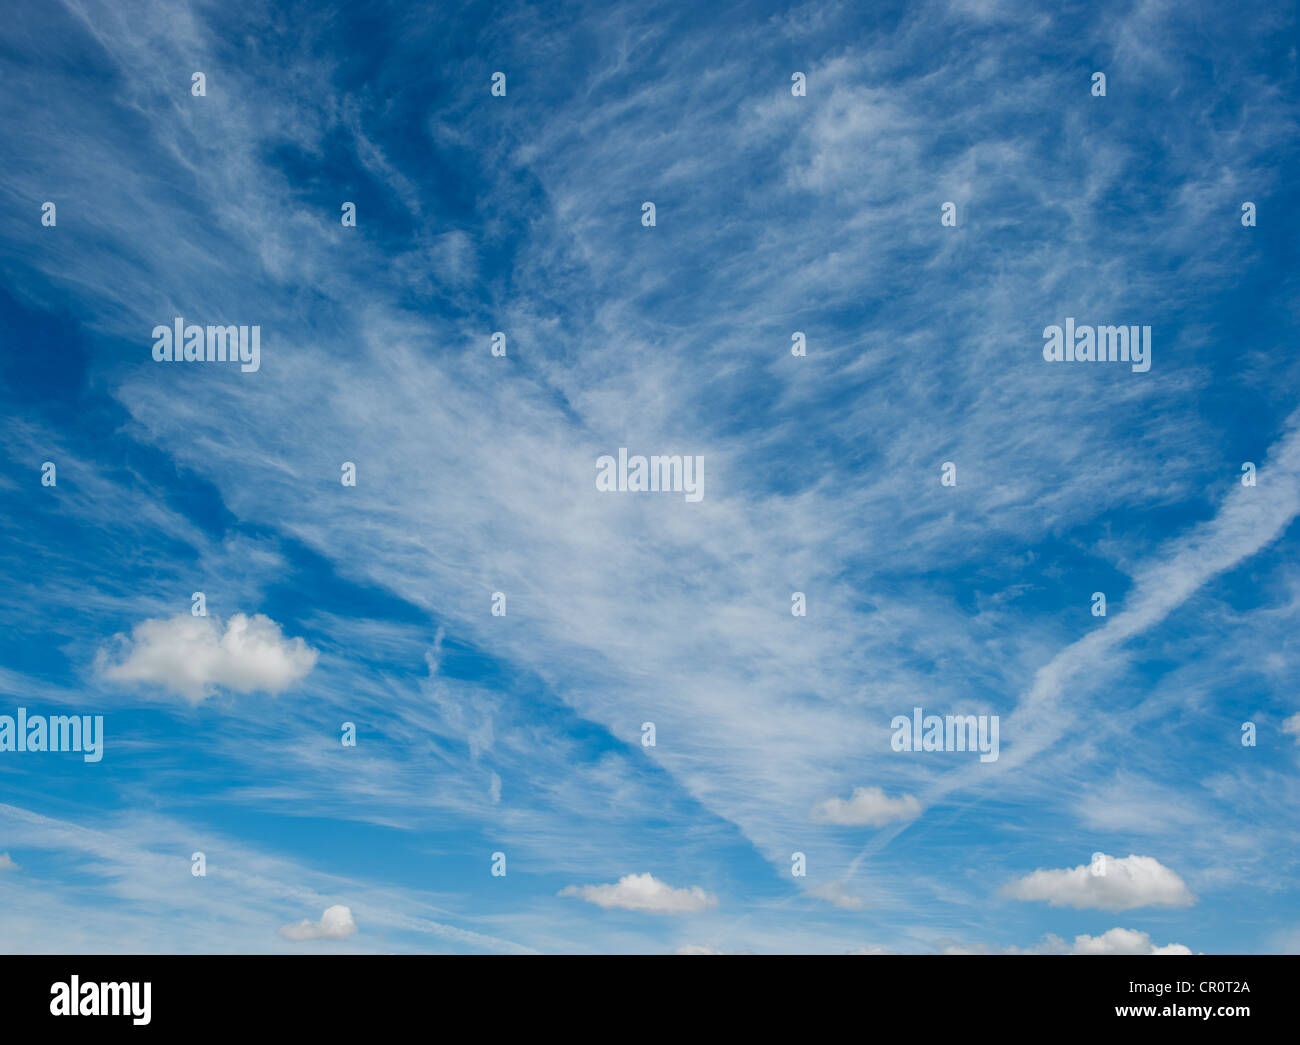 Las nubes blancas sobre fondo de cielo azul profundo Foto de stock